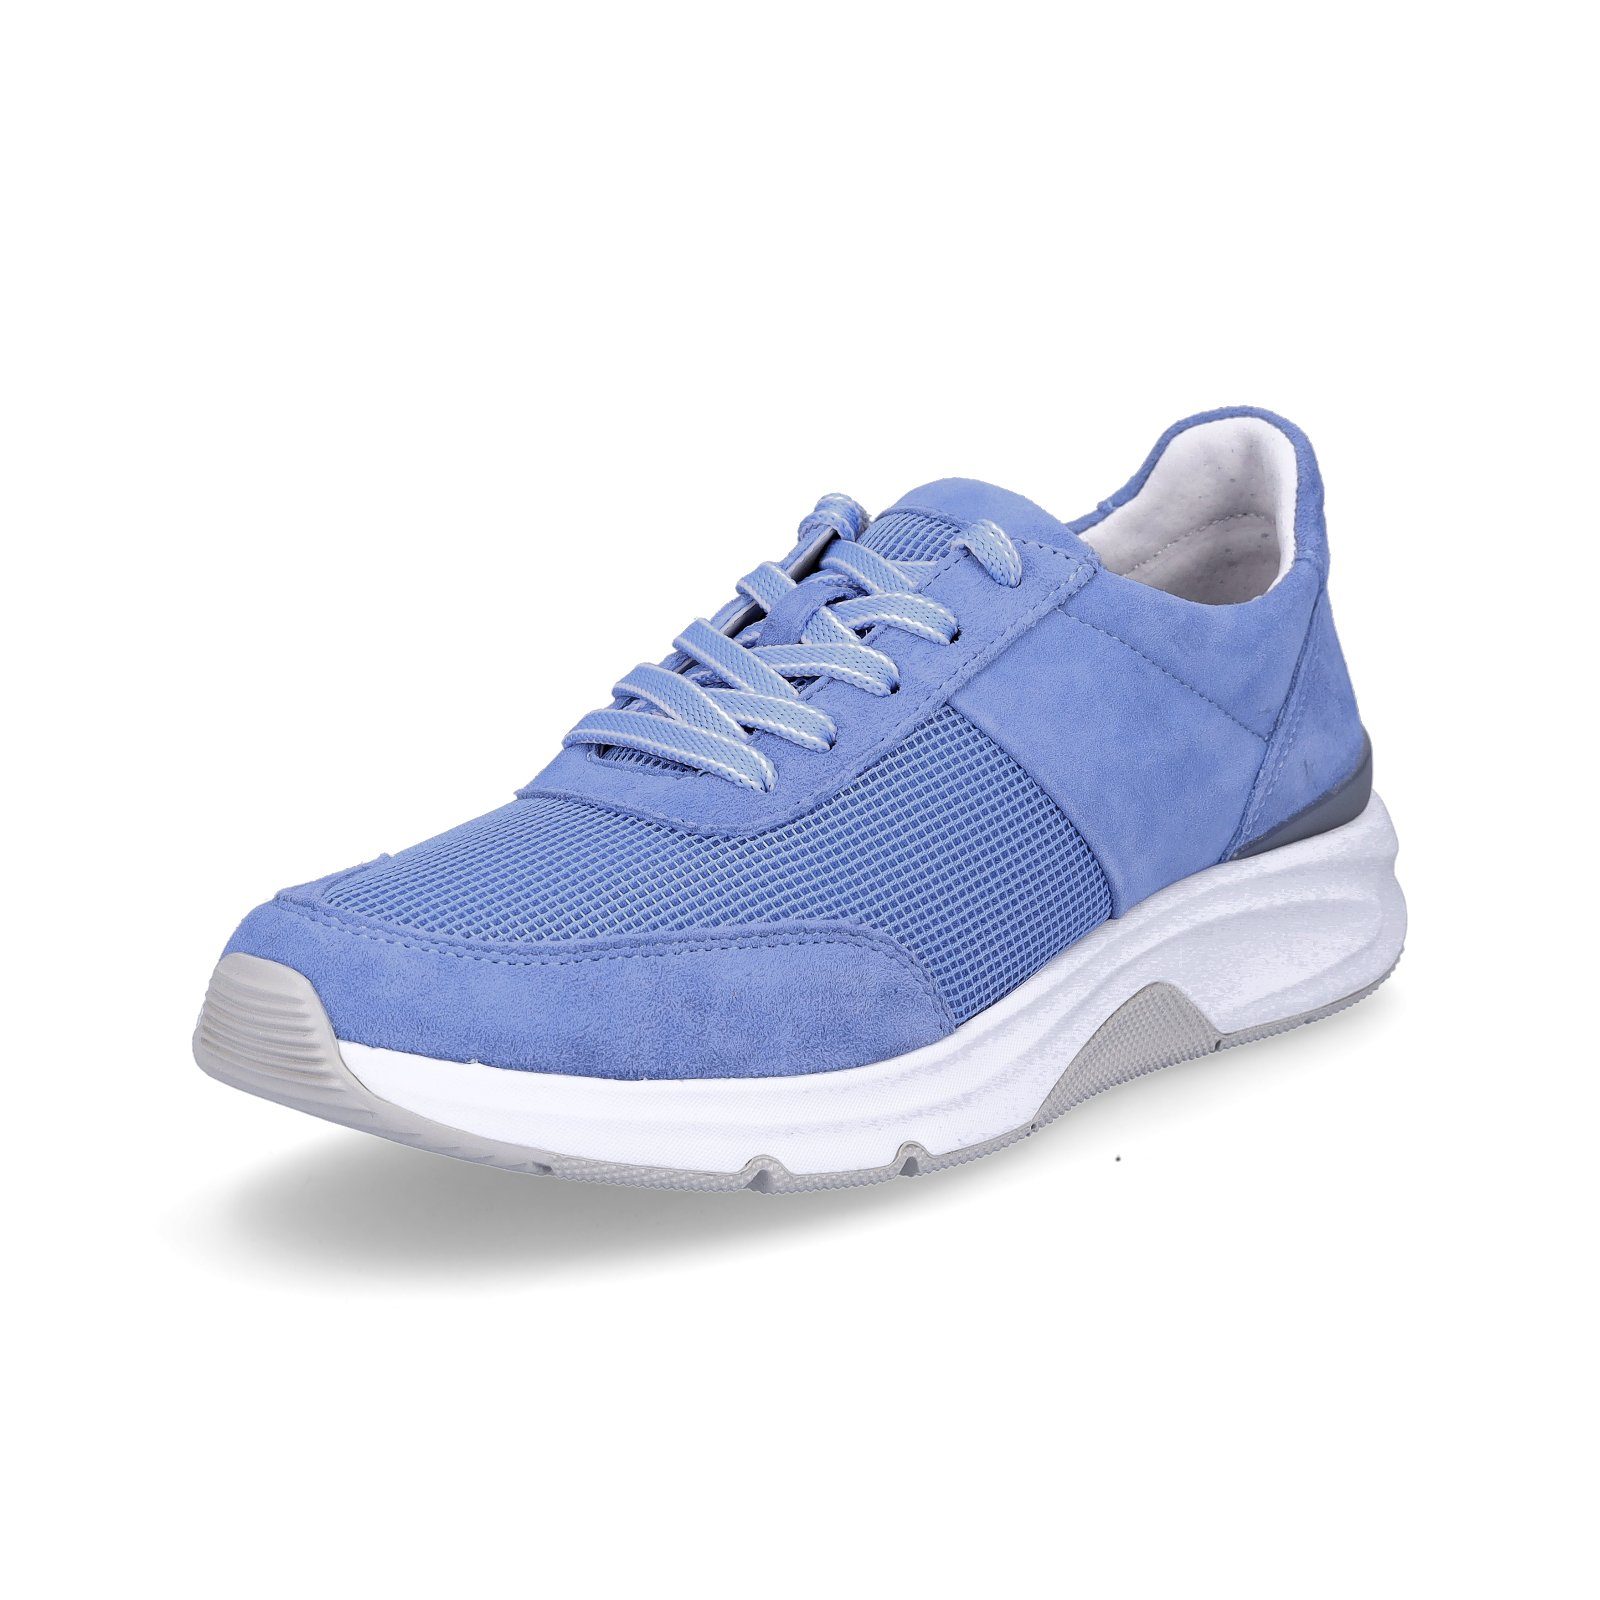 Gabor blau arktis / Blau Damen Sneaker Leder Sneaker (arktis Rollingsoft Gabor 16)